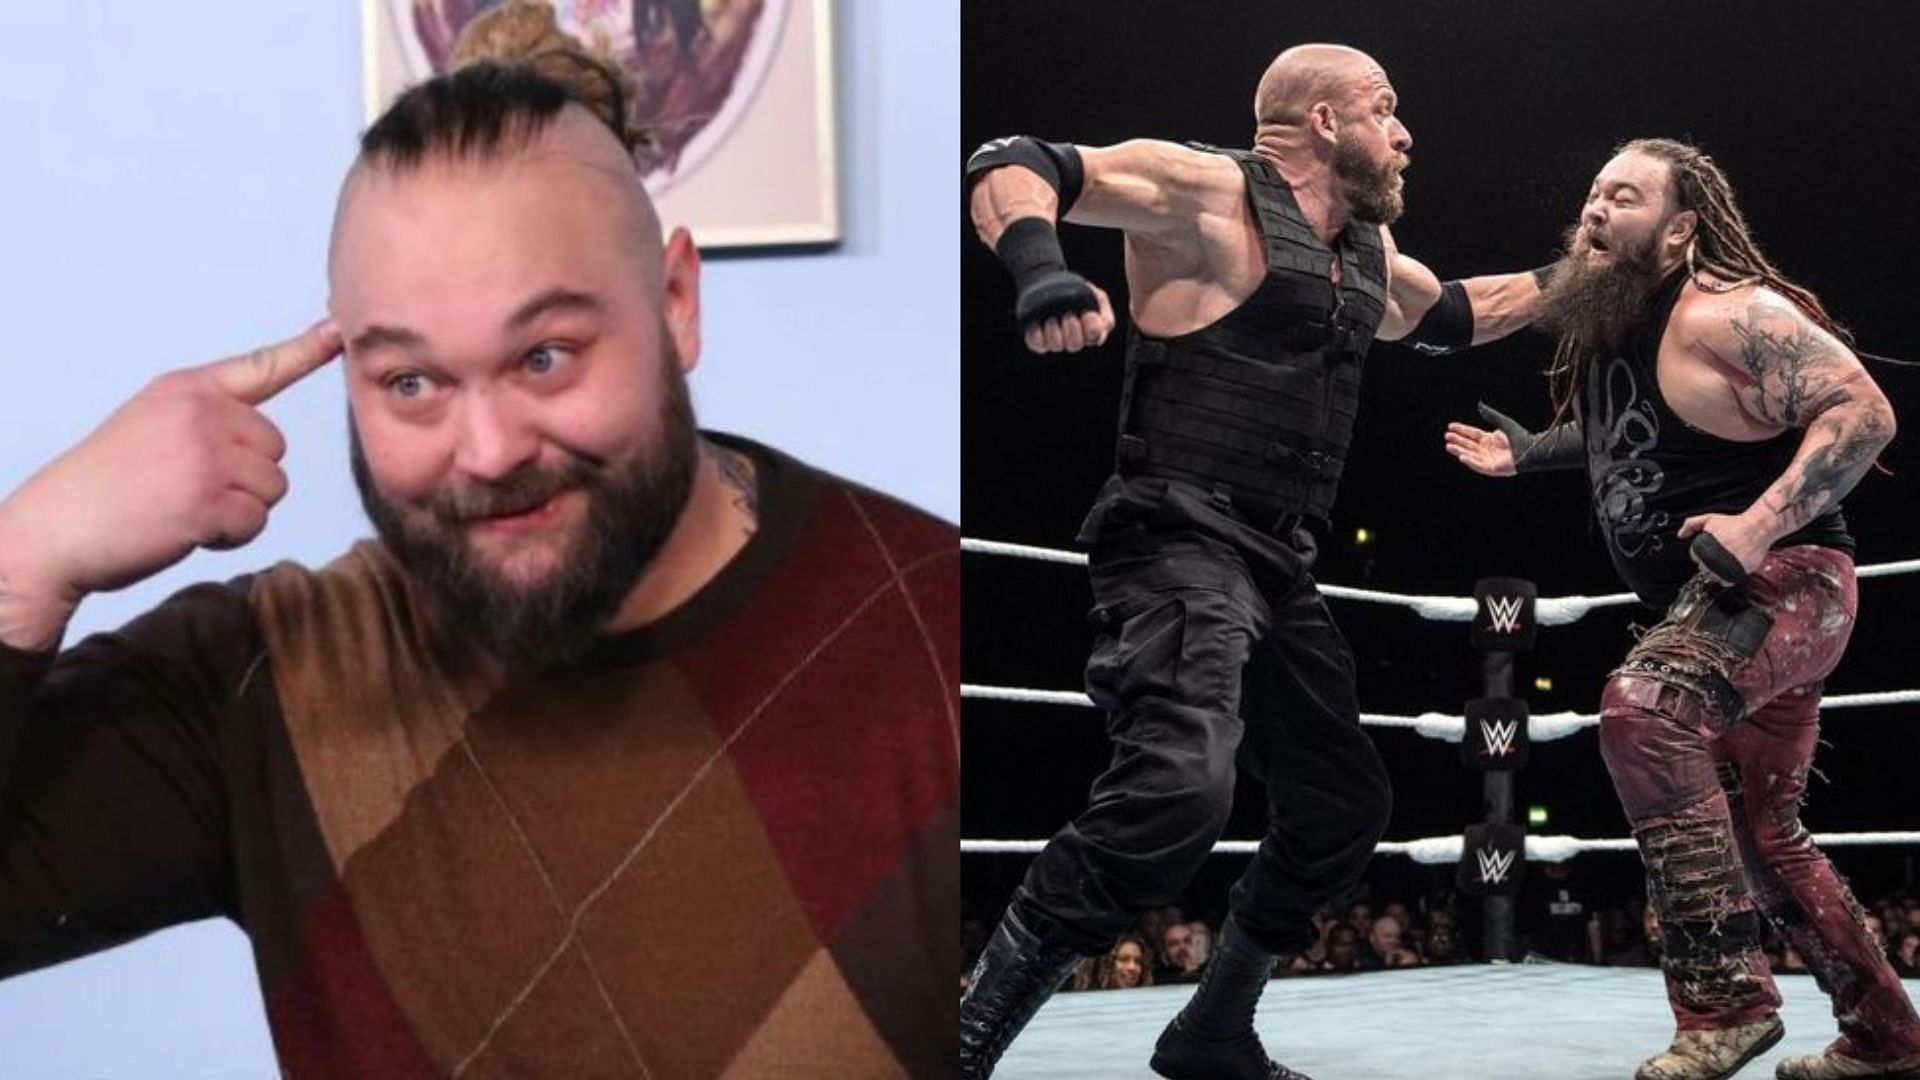 Bray Wyatt (The Fiend) has let-go by WWE in 2021